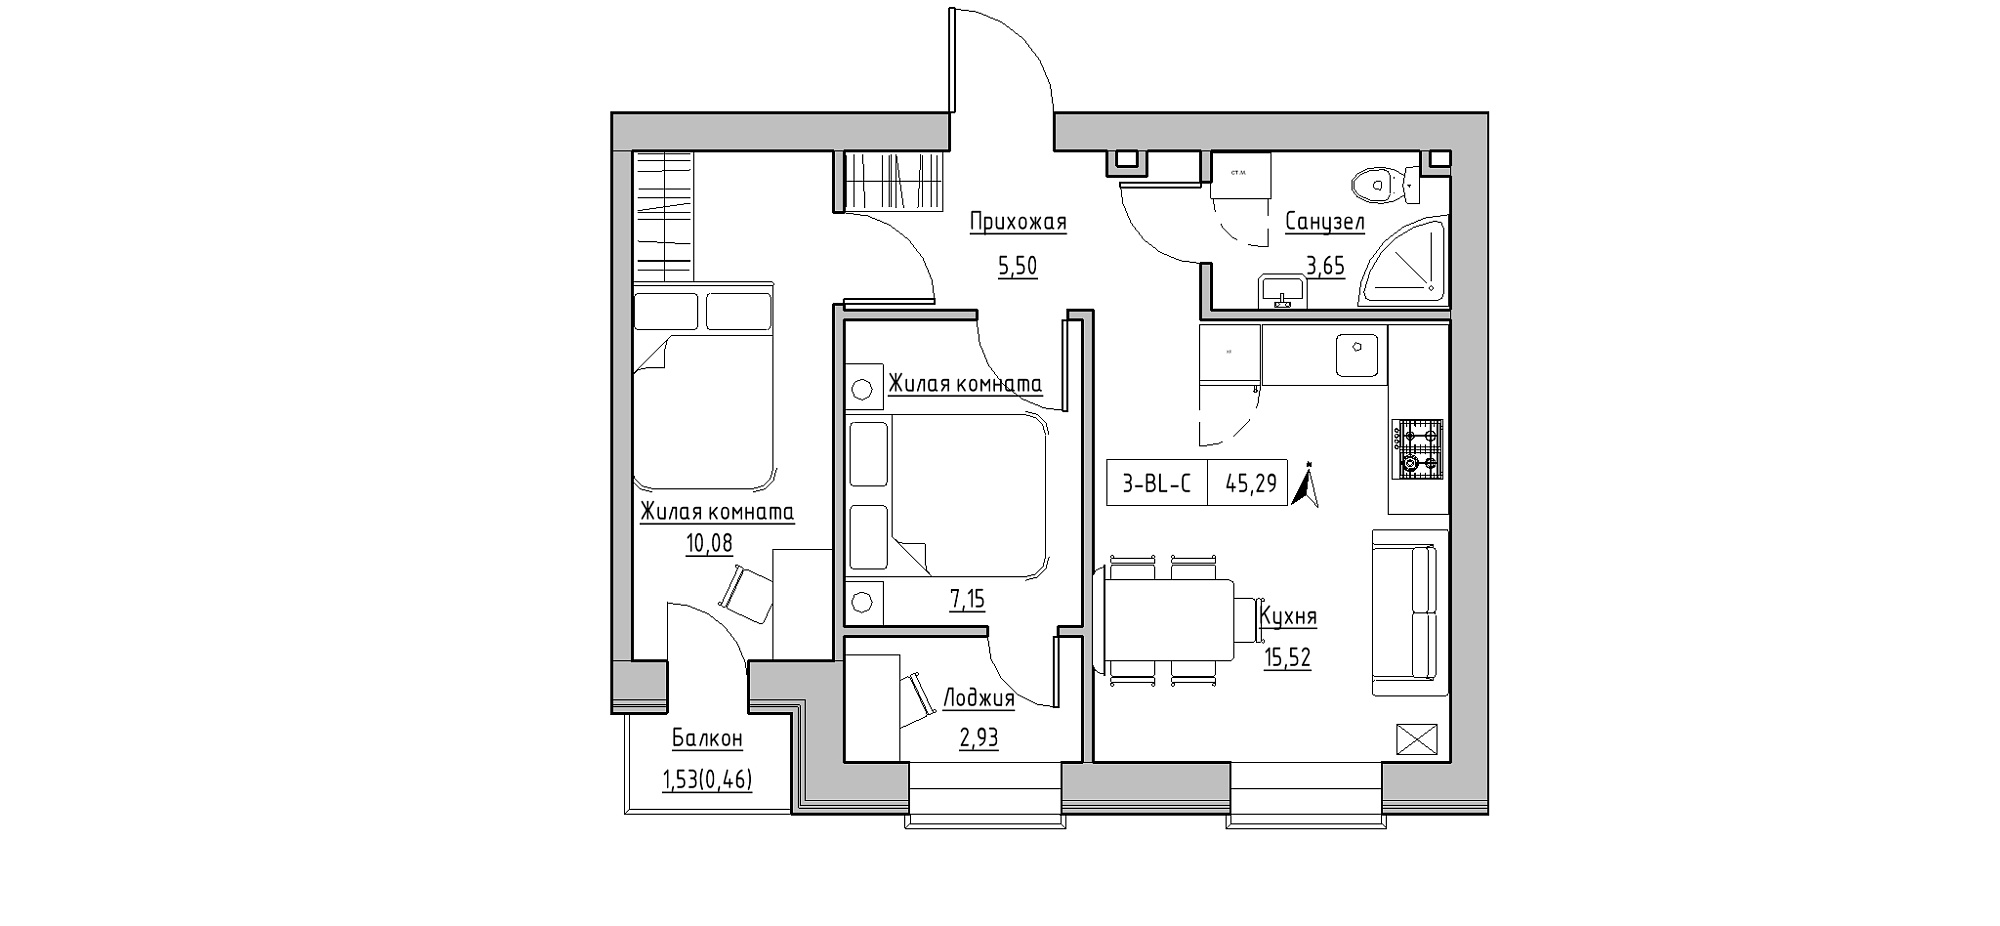 Планировка 3-к квартира площей 45.29м2, KS-020-02/0008.